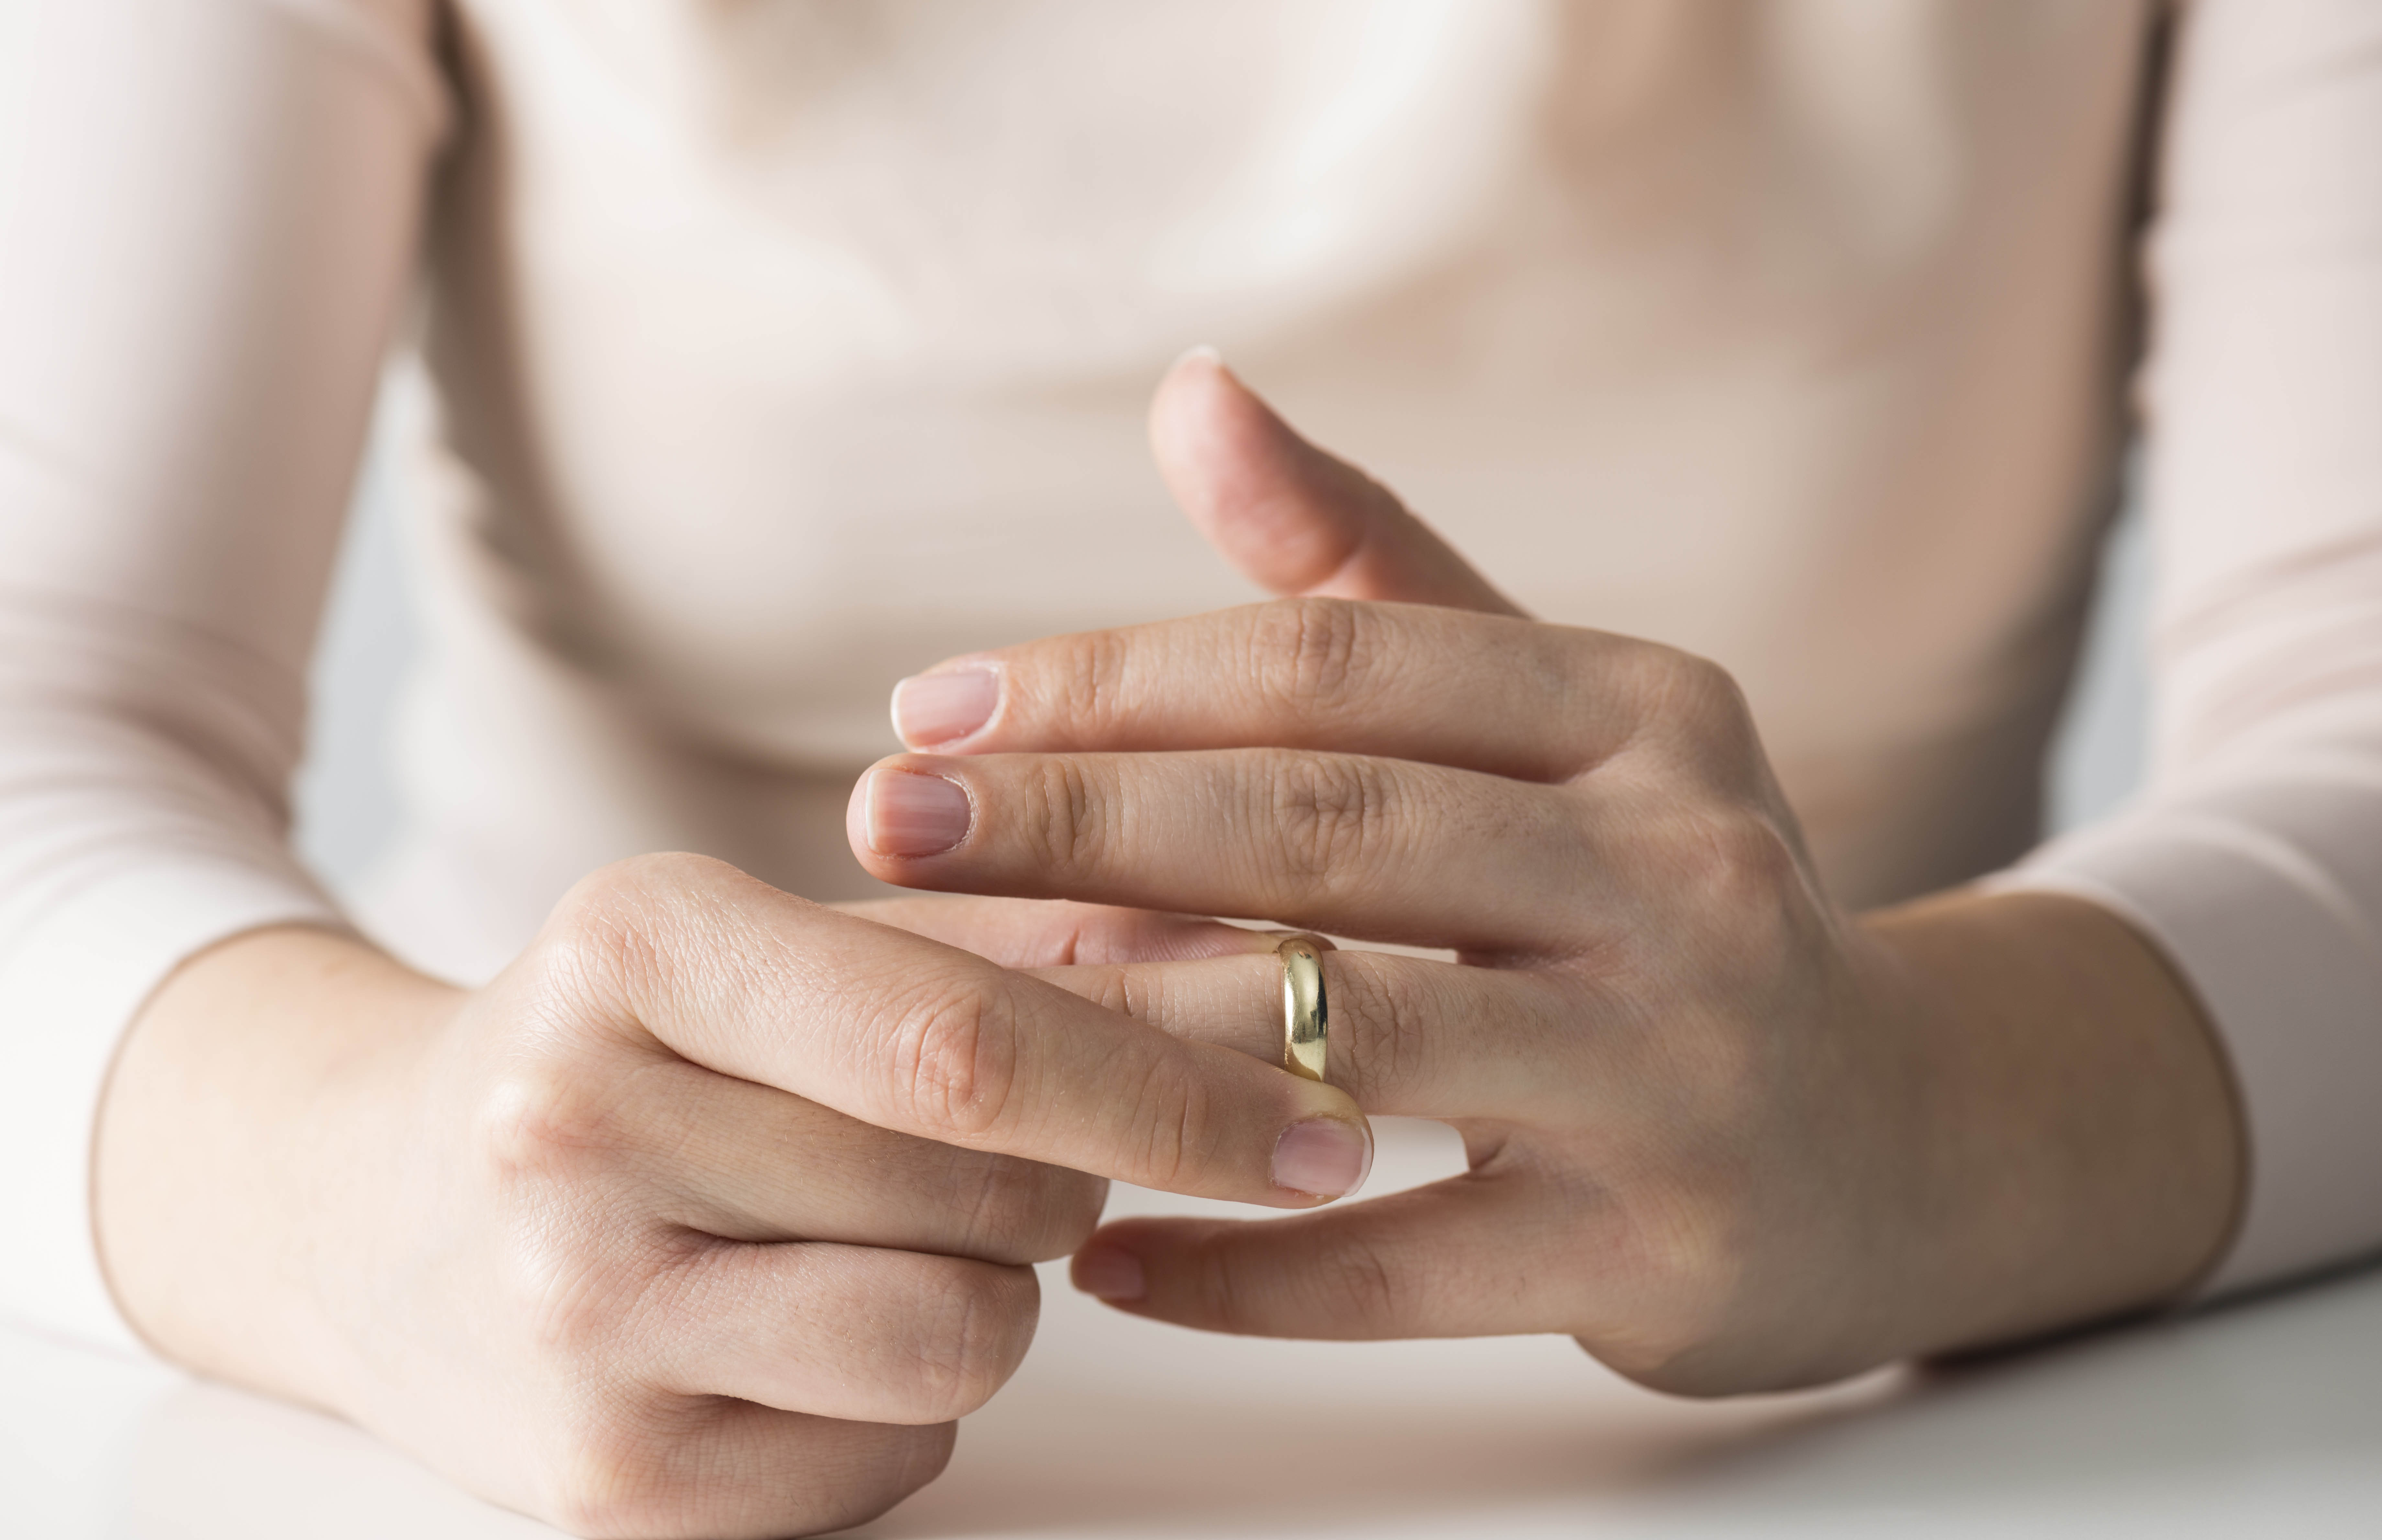 Видеть рукой цвет. Кольцо на пальце. Обручальное кольцо. Обручальные кольца на руках. Женская рука с кольцом.